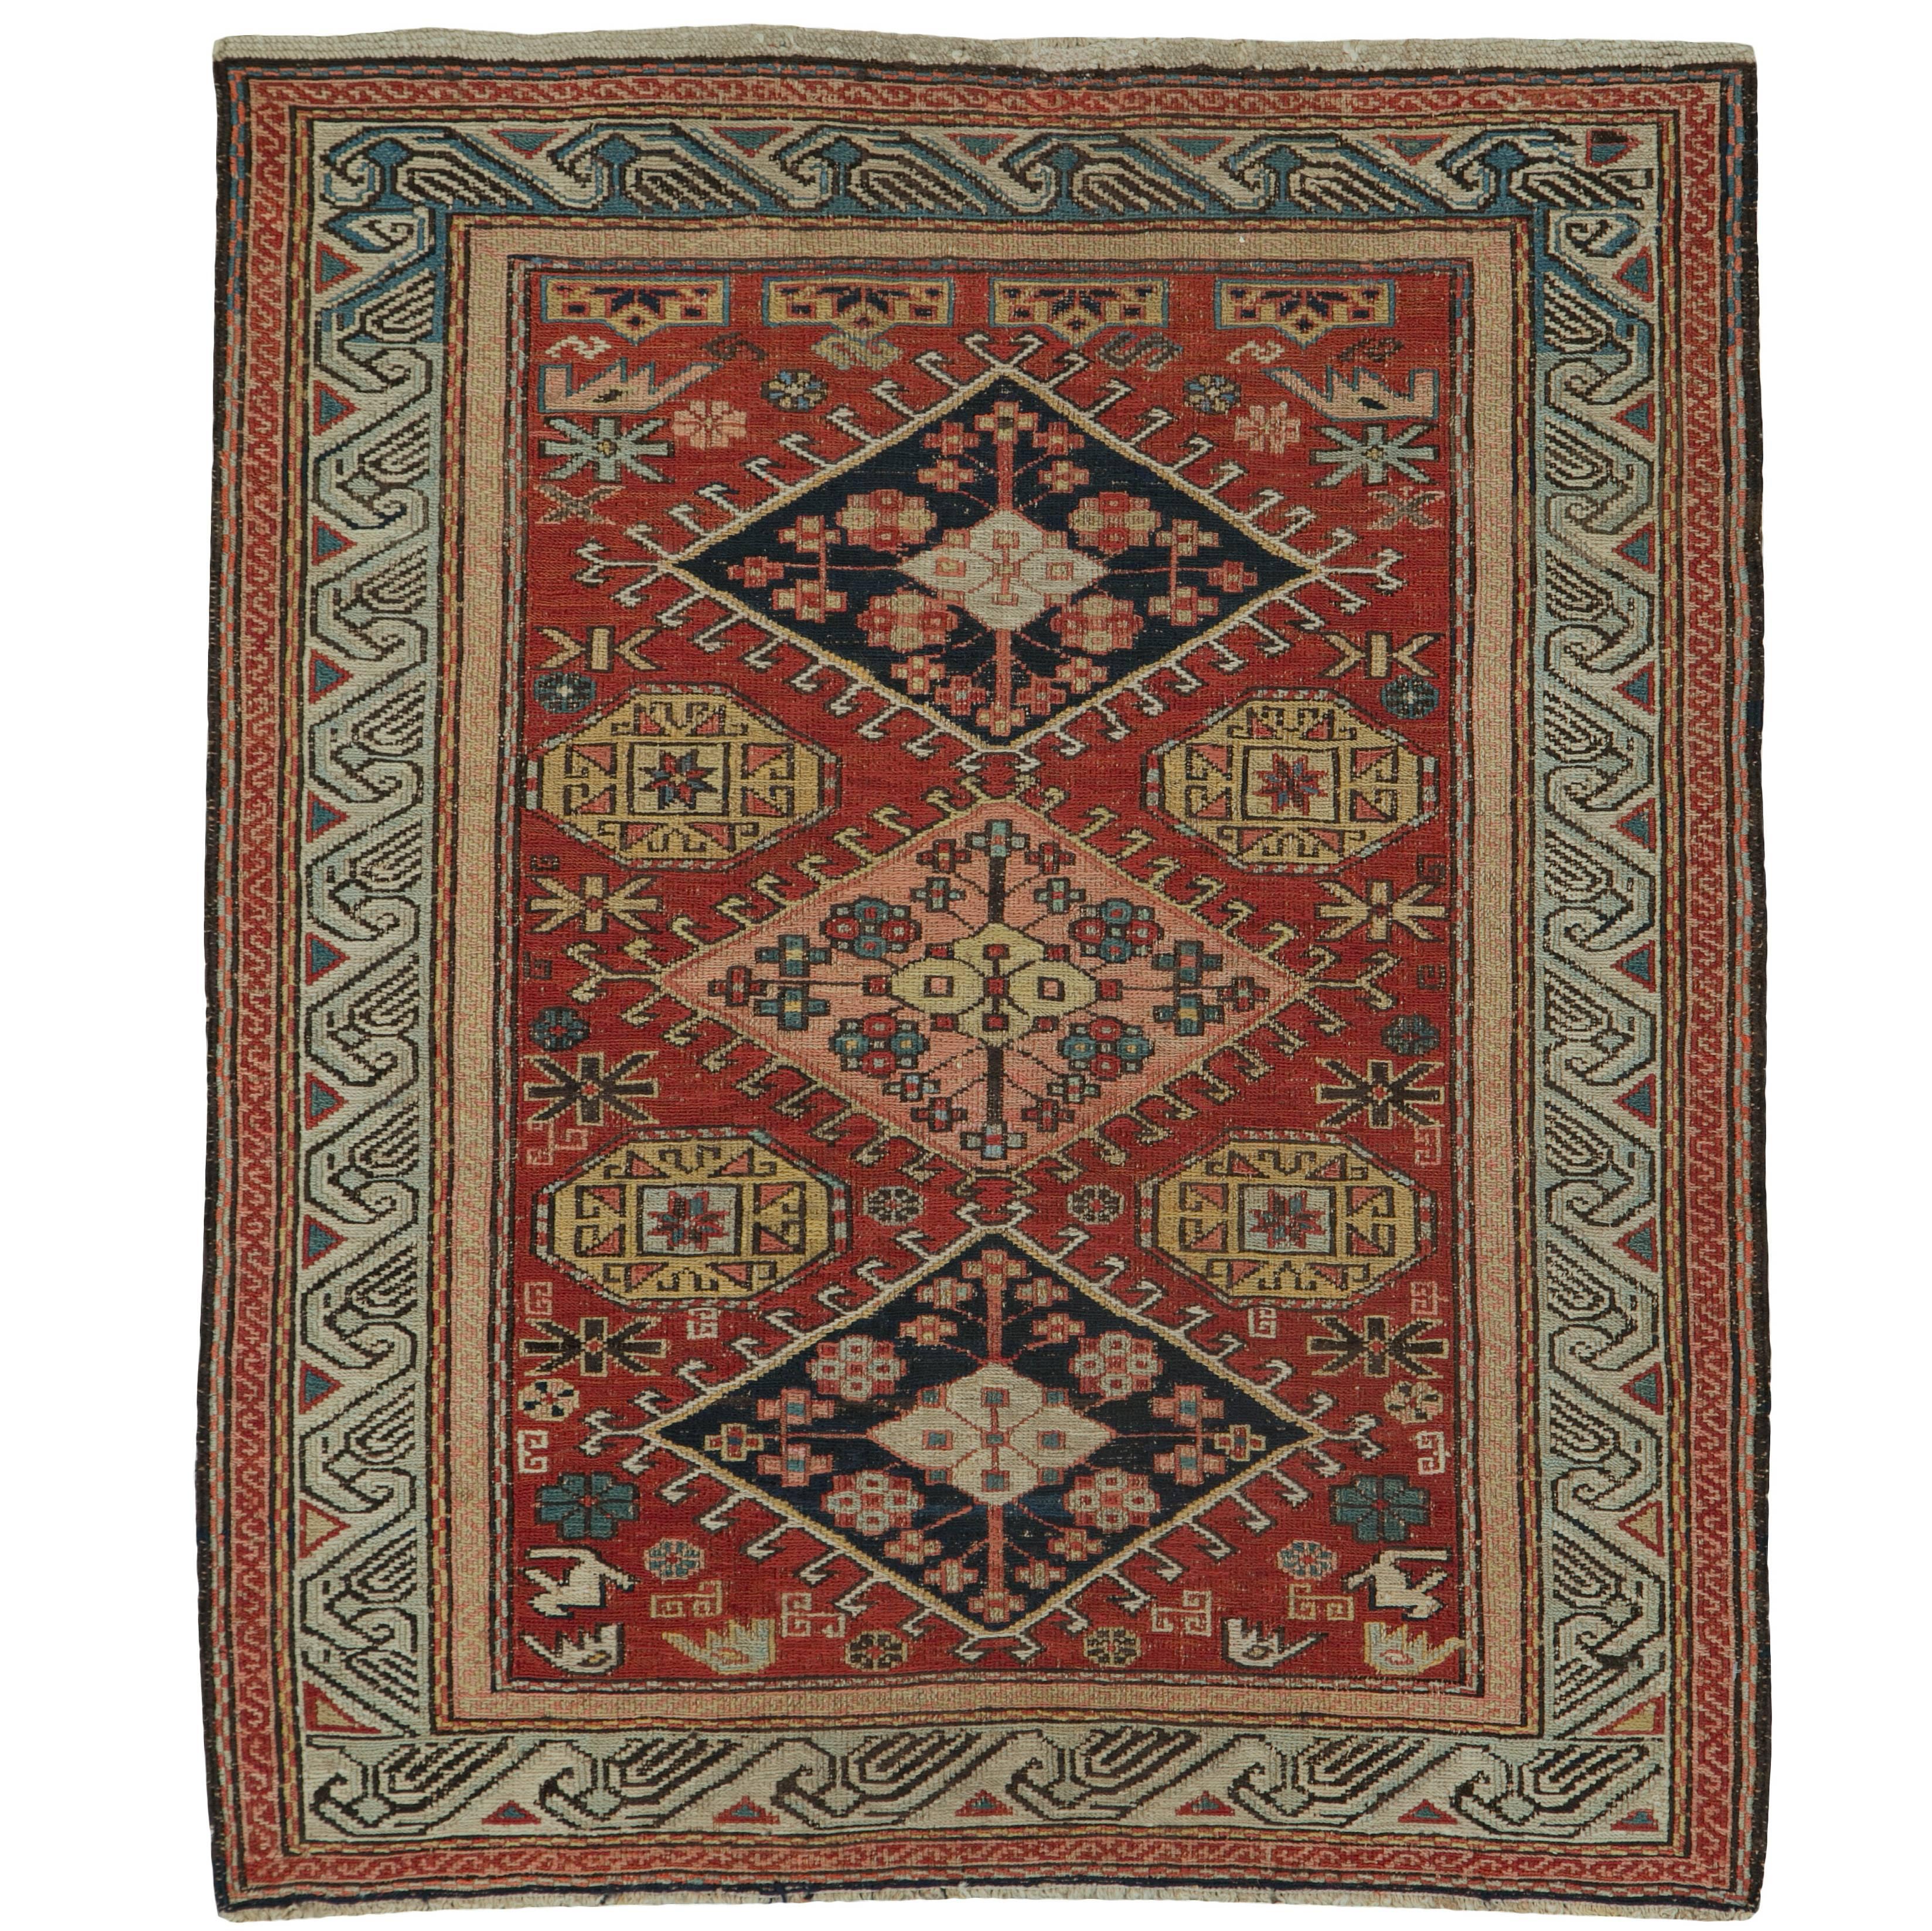 Antique Persian Sumak Rug